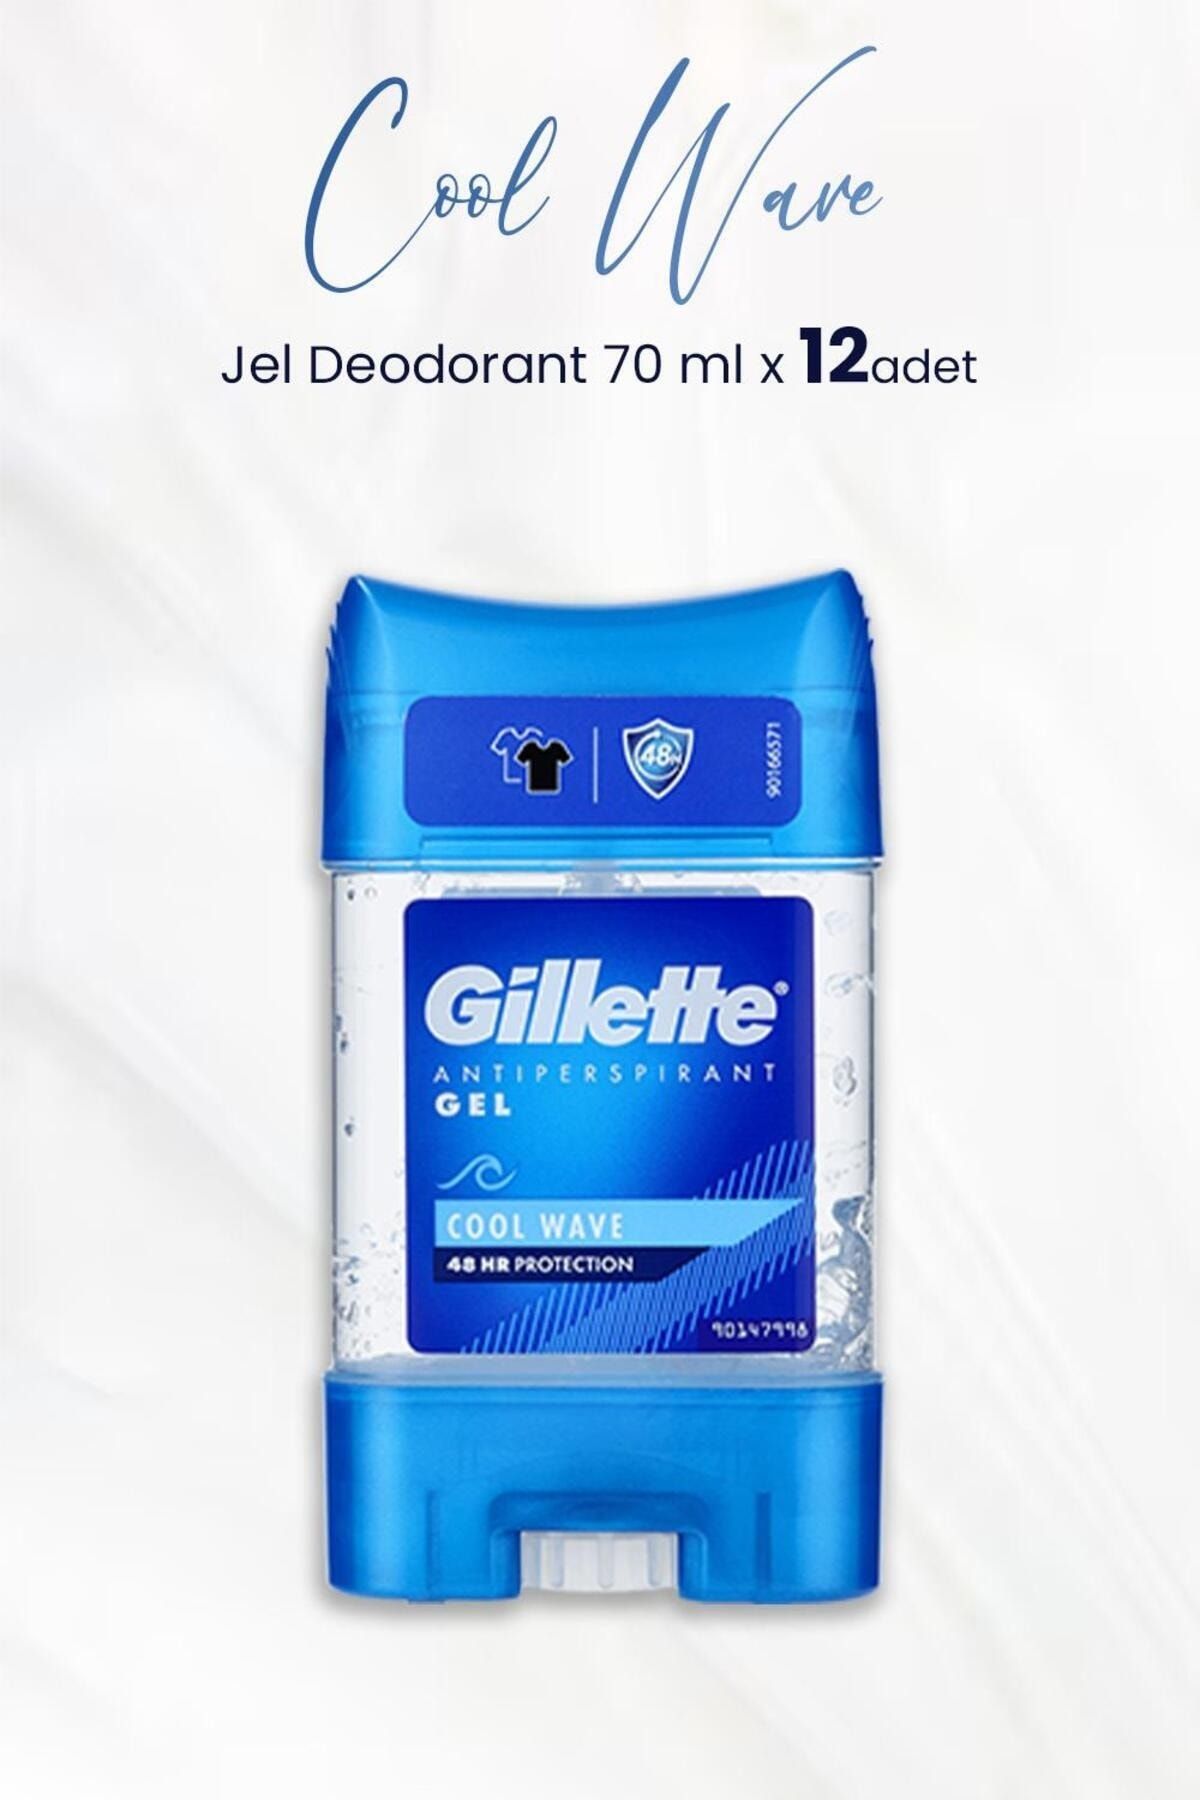 Gillette Antiperspirant Gel Cool Wave 70 ml x 12 Adet